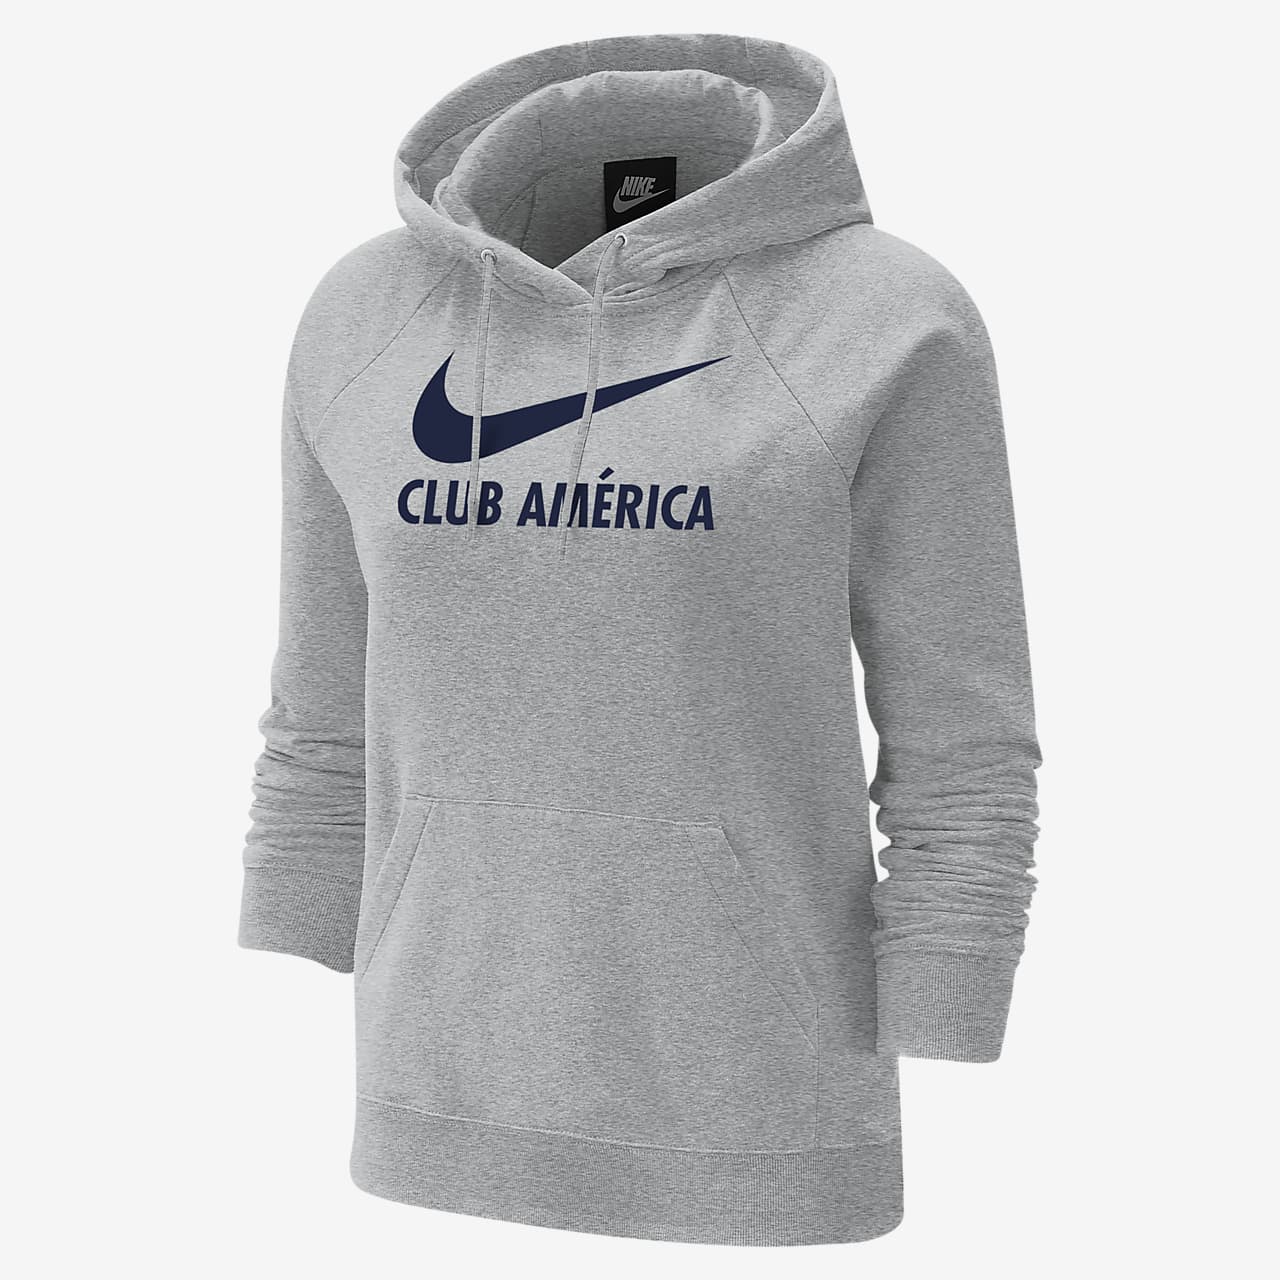 Club America Women's Varsity Fleece Hoodie.